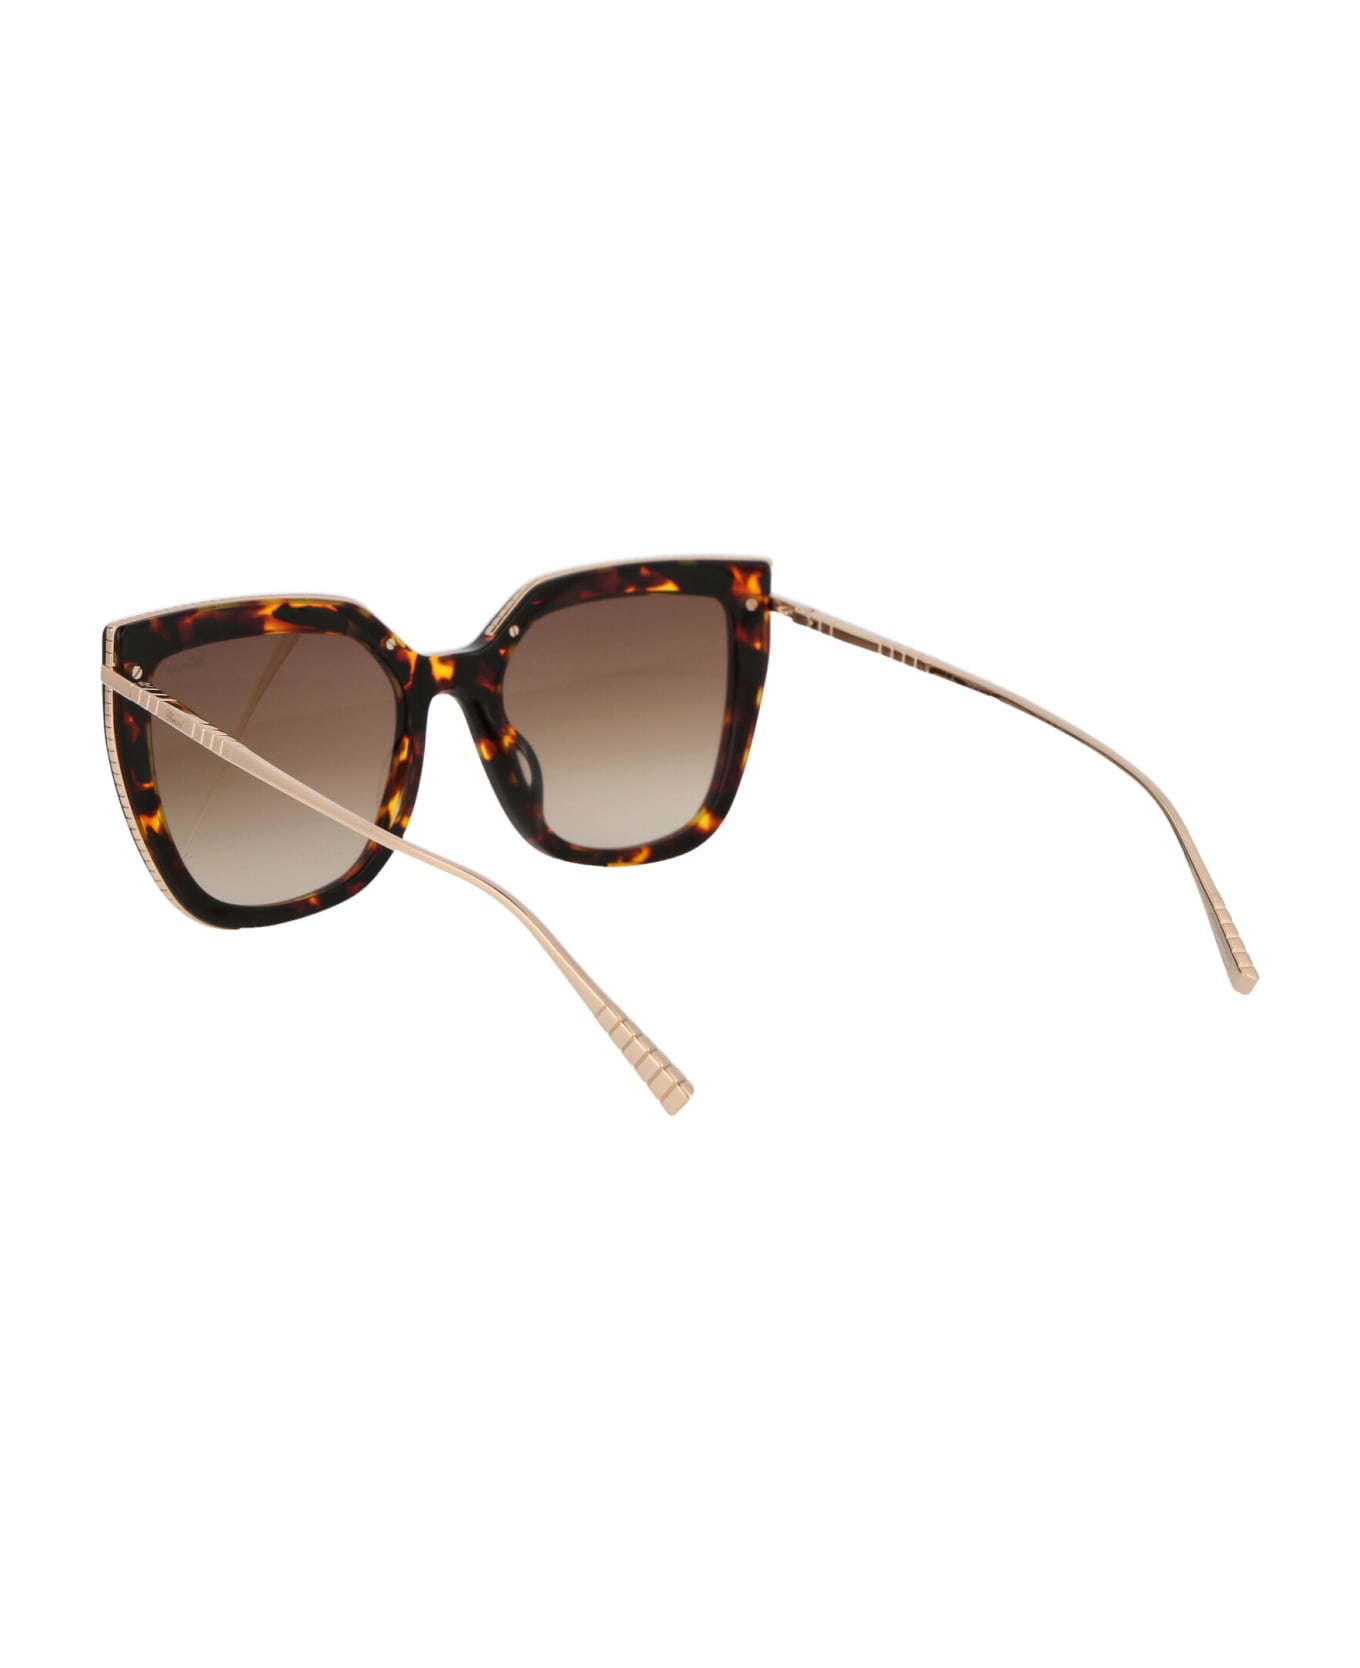 Chopard Sch319m Sunglasses - 0745 BROWN